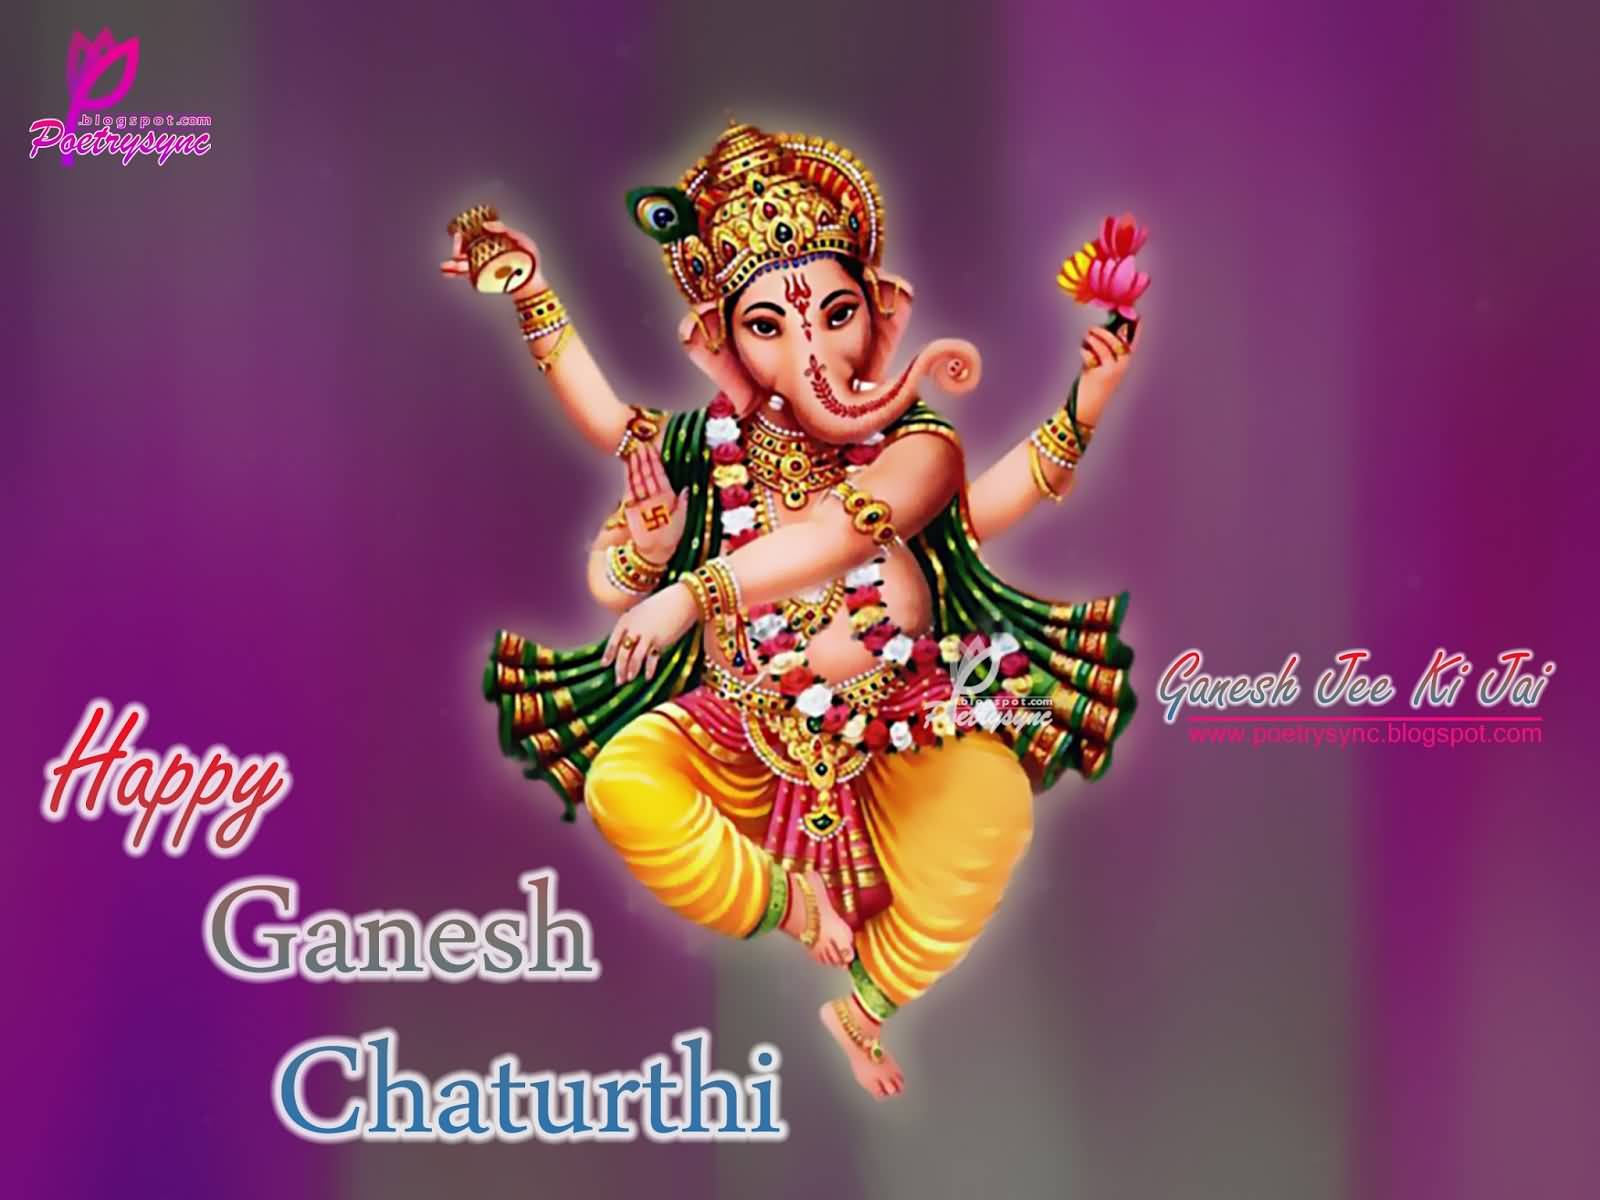 Happy Ganesh Chaturthi Ganesh Jee Ki Jai